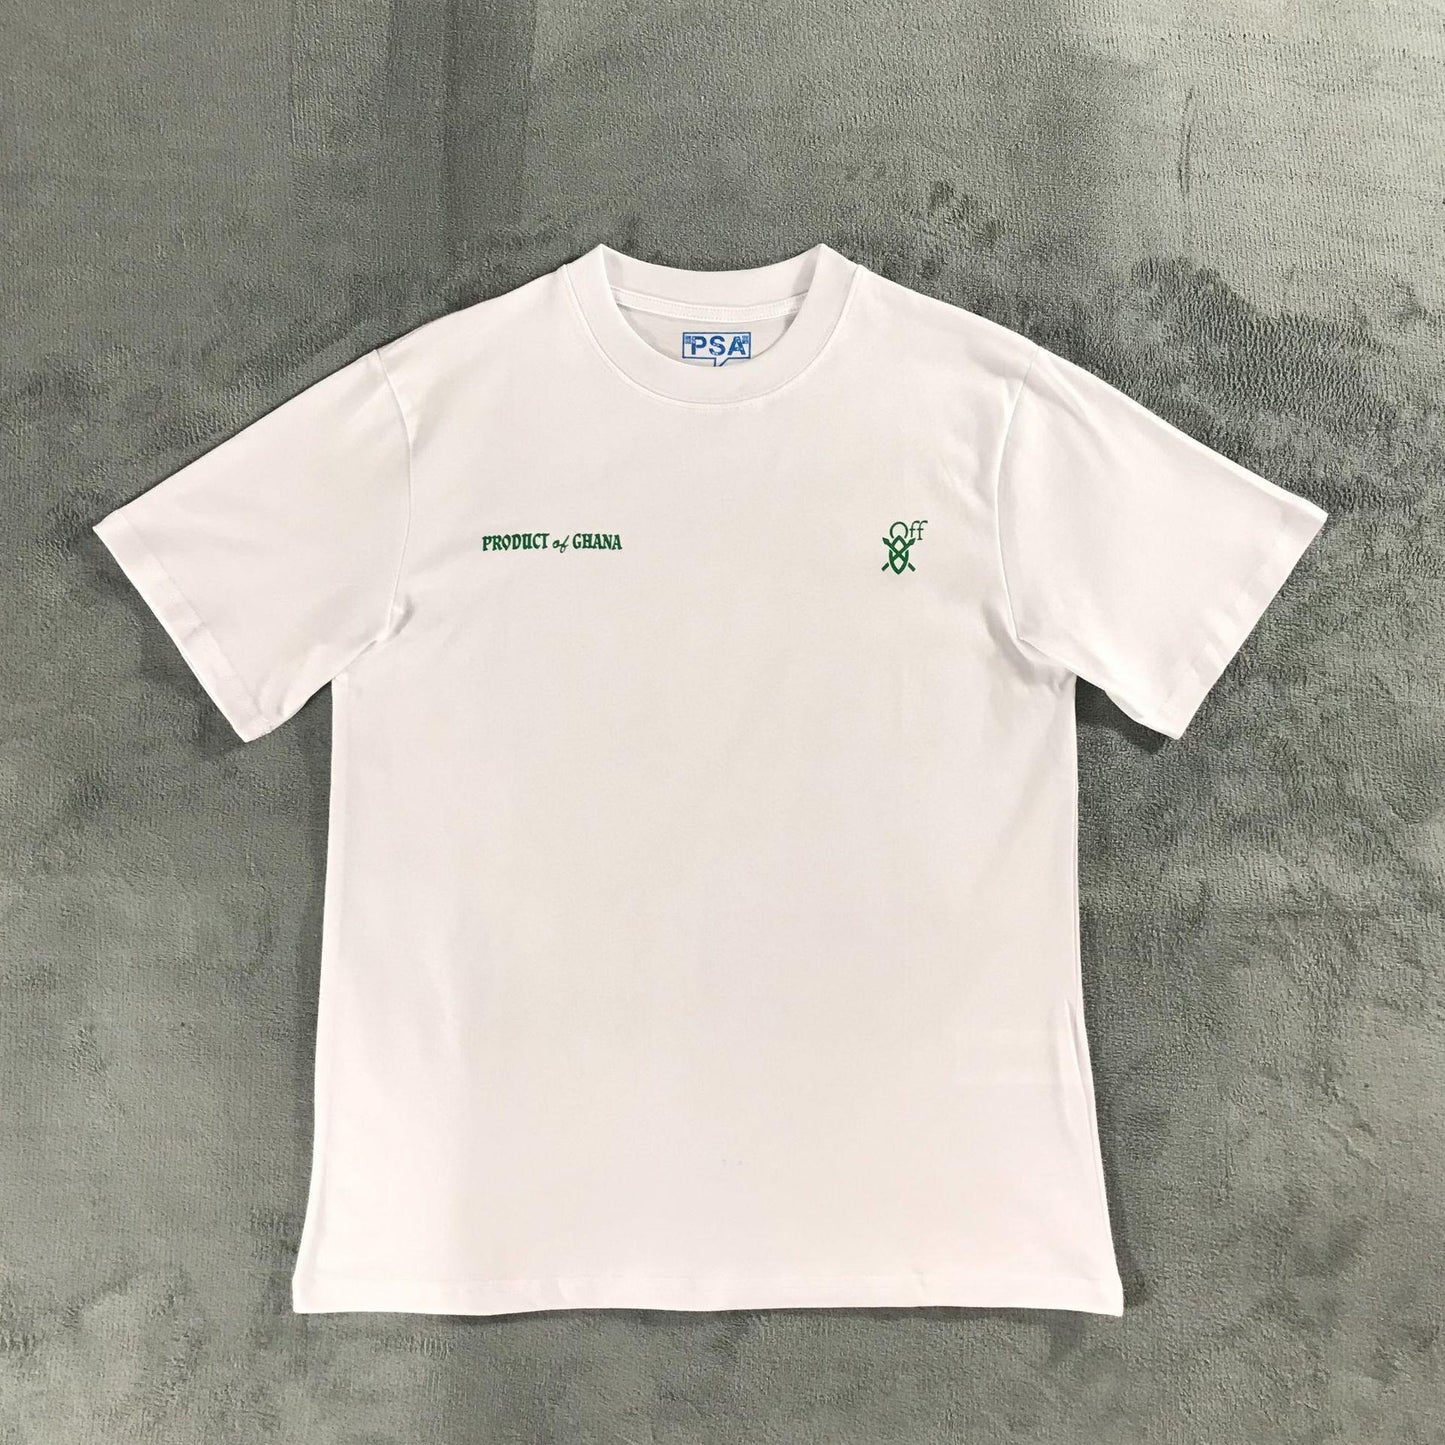 Off white T-Shirt - 2